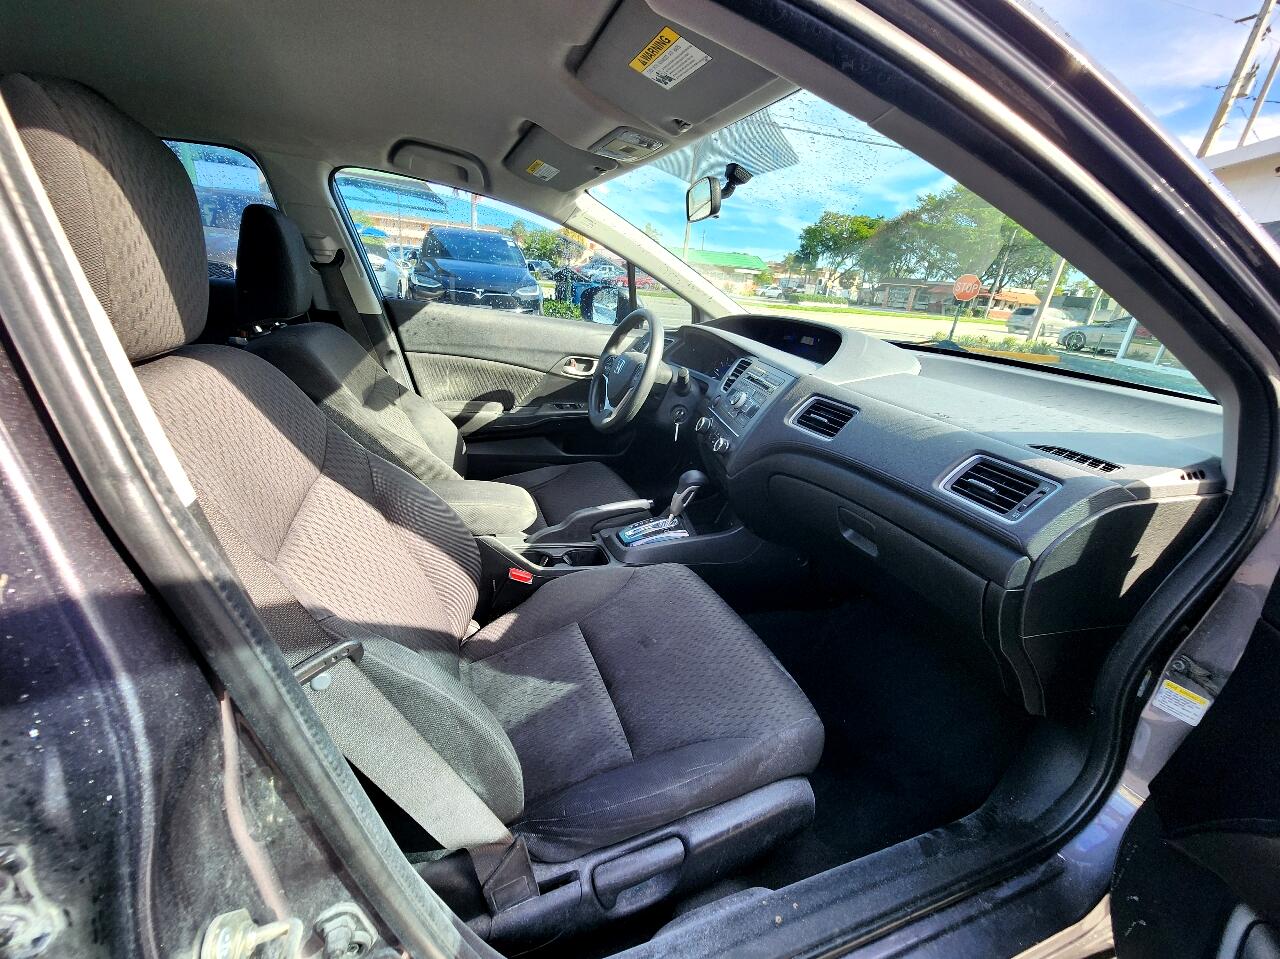 2014 HONDA Civic Sedan - $13,999